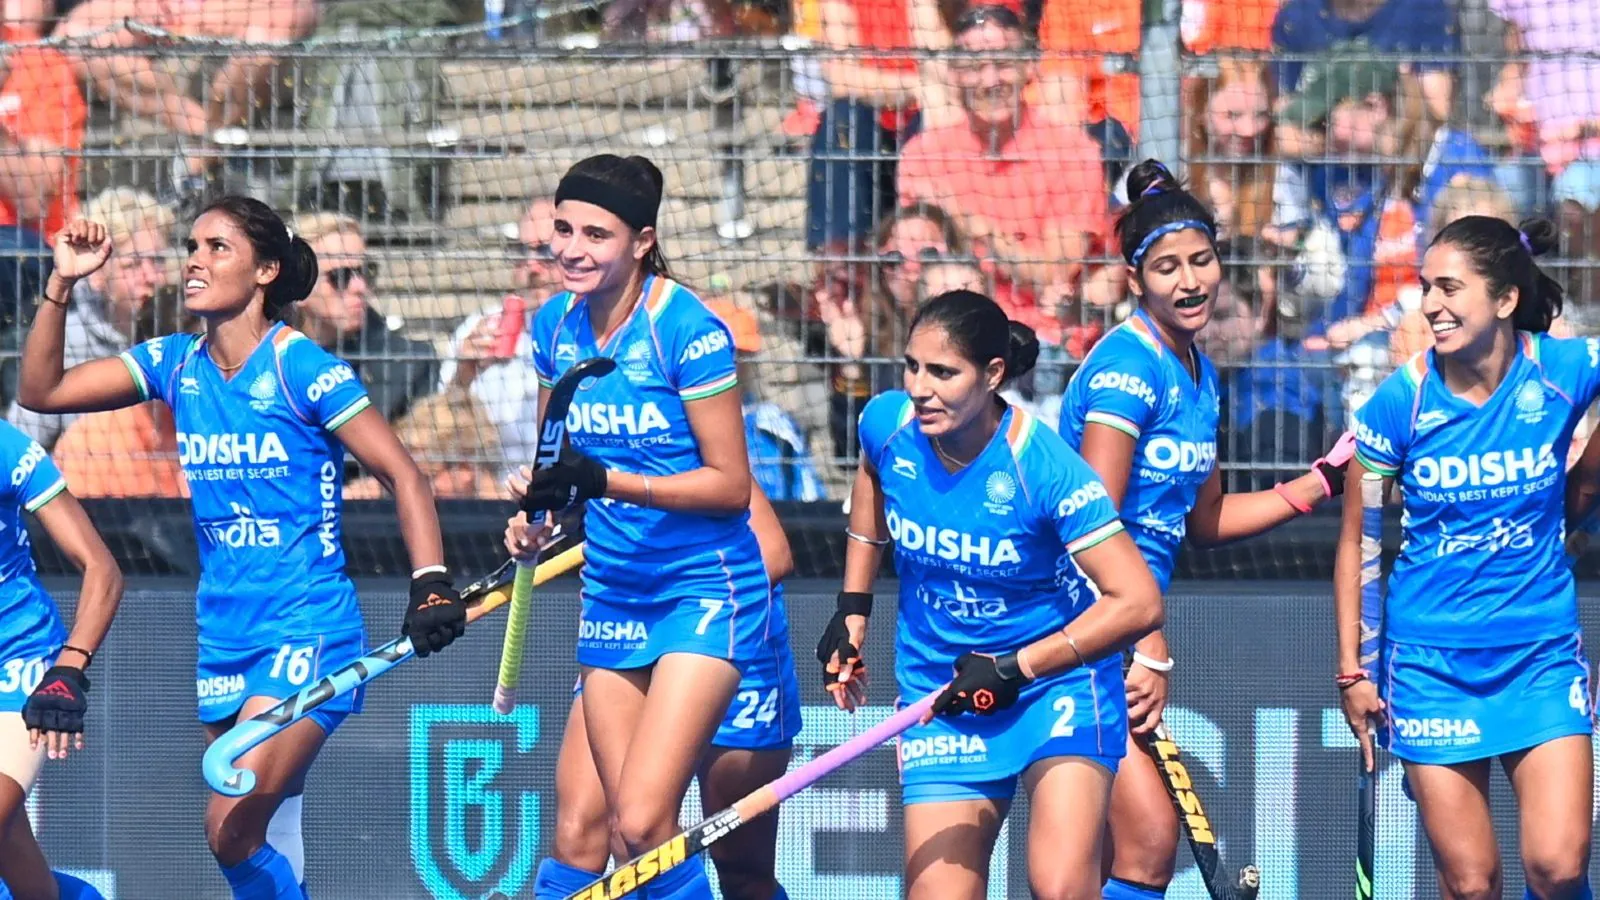 CWG 2022: Indian women's  hockey team defeats New Zealand to win bronze medal CWG 2022: ਭਾਰਤੀ ਮਹਿਲਾ ਹਾਕੀ ਟੀਮ ਨੇ ਕੀਤਾ ਕਮਾਲ, ਨਿਊਜ਼ੀਲੈਂਡ ਨੂੰ ਹਰਾ ਕੇ ਜਿੱਤਿਆ ਕਾਂਸੀ ਦਾ ਤਮਗਾ